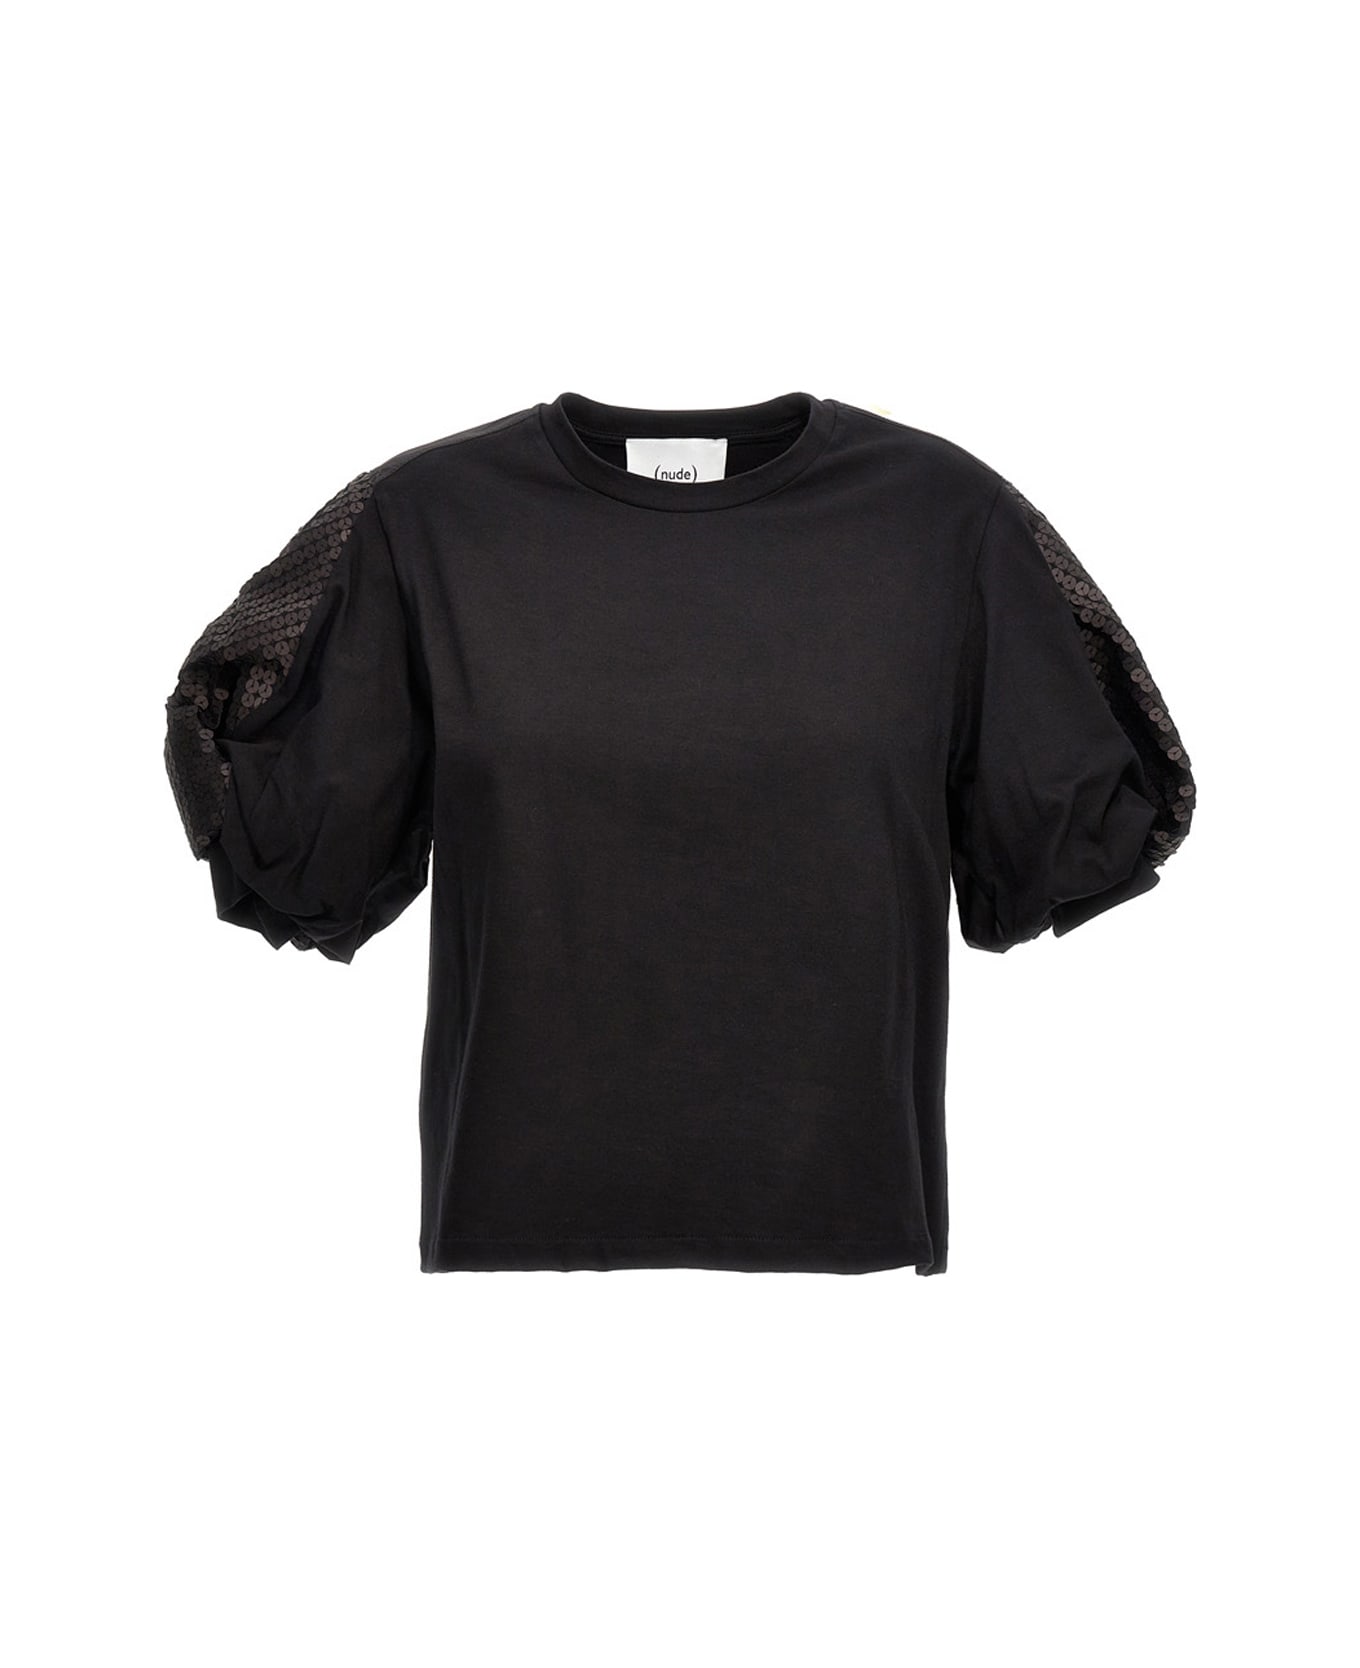 (nude) Sequin T-shirt - Black   Tシャツ